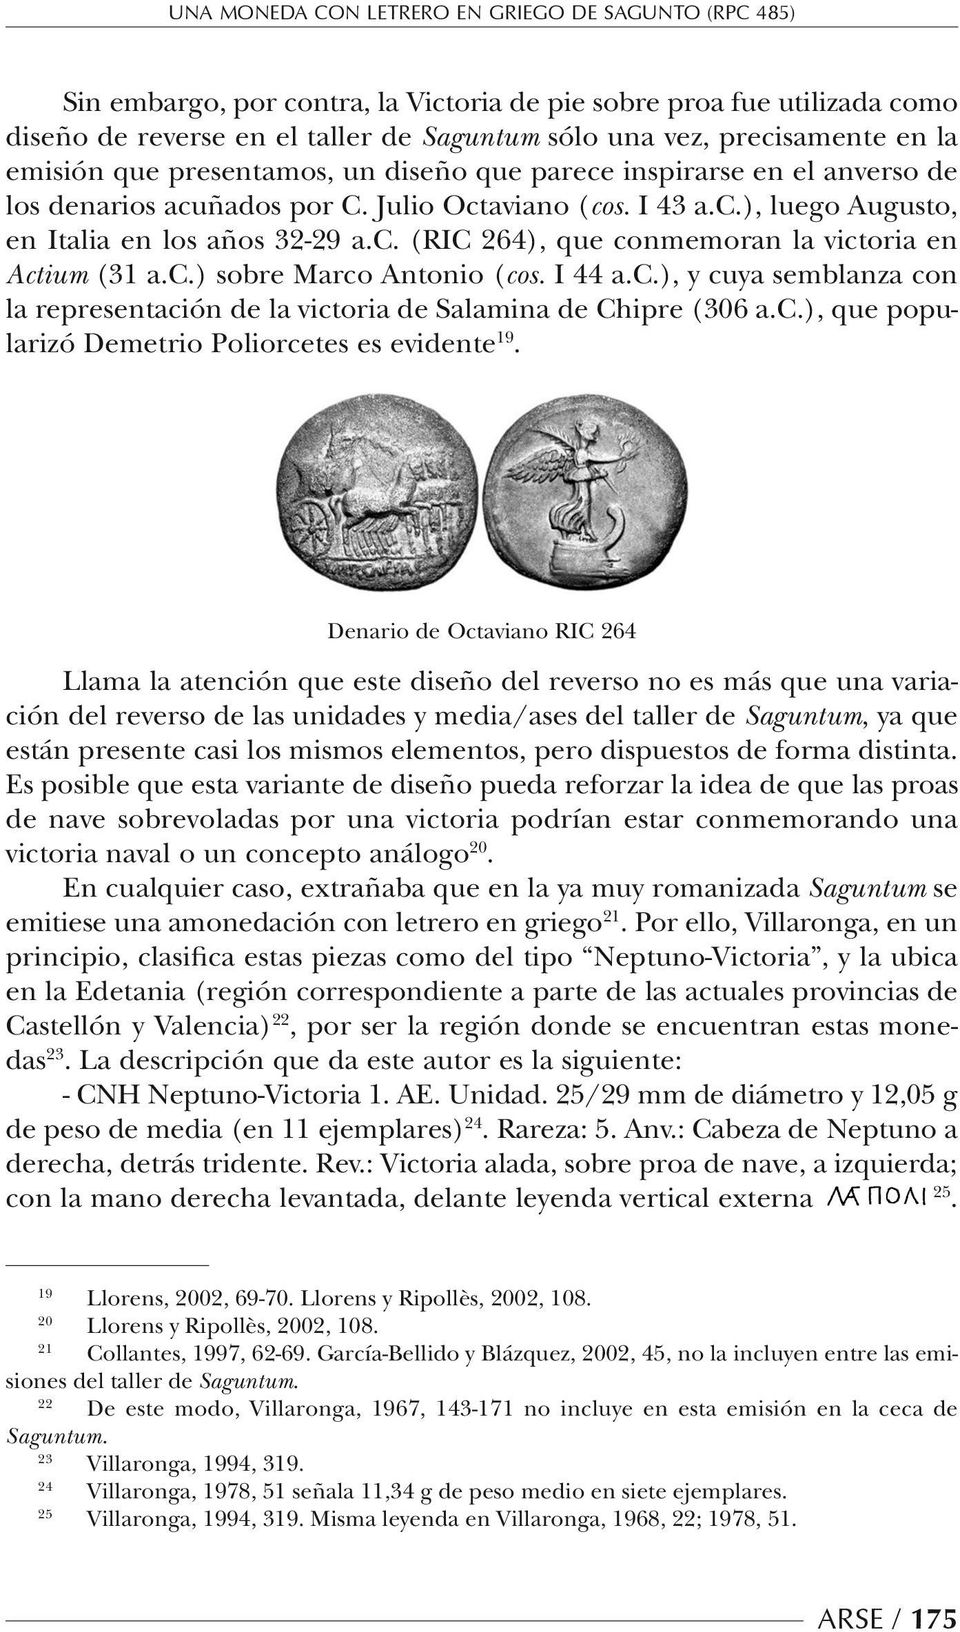 c.) sobre Marco Antonio (cos. I 44 a.c.), y cuya semblanza con la representación de la victoria de Salamina de Chipre (306 a.c.), que popularizó Demetrio Poliorcetes es evidente 19.